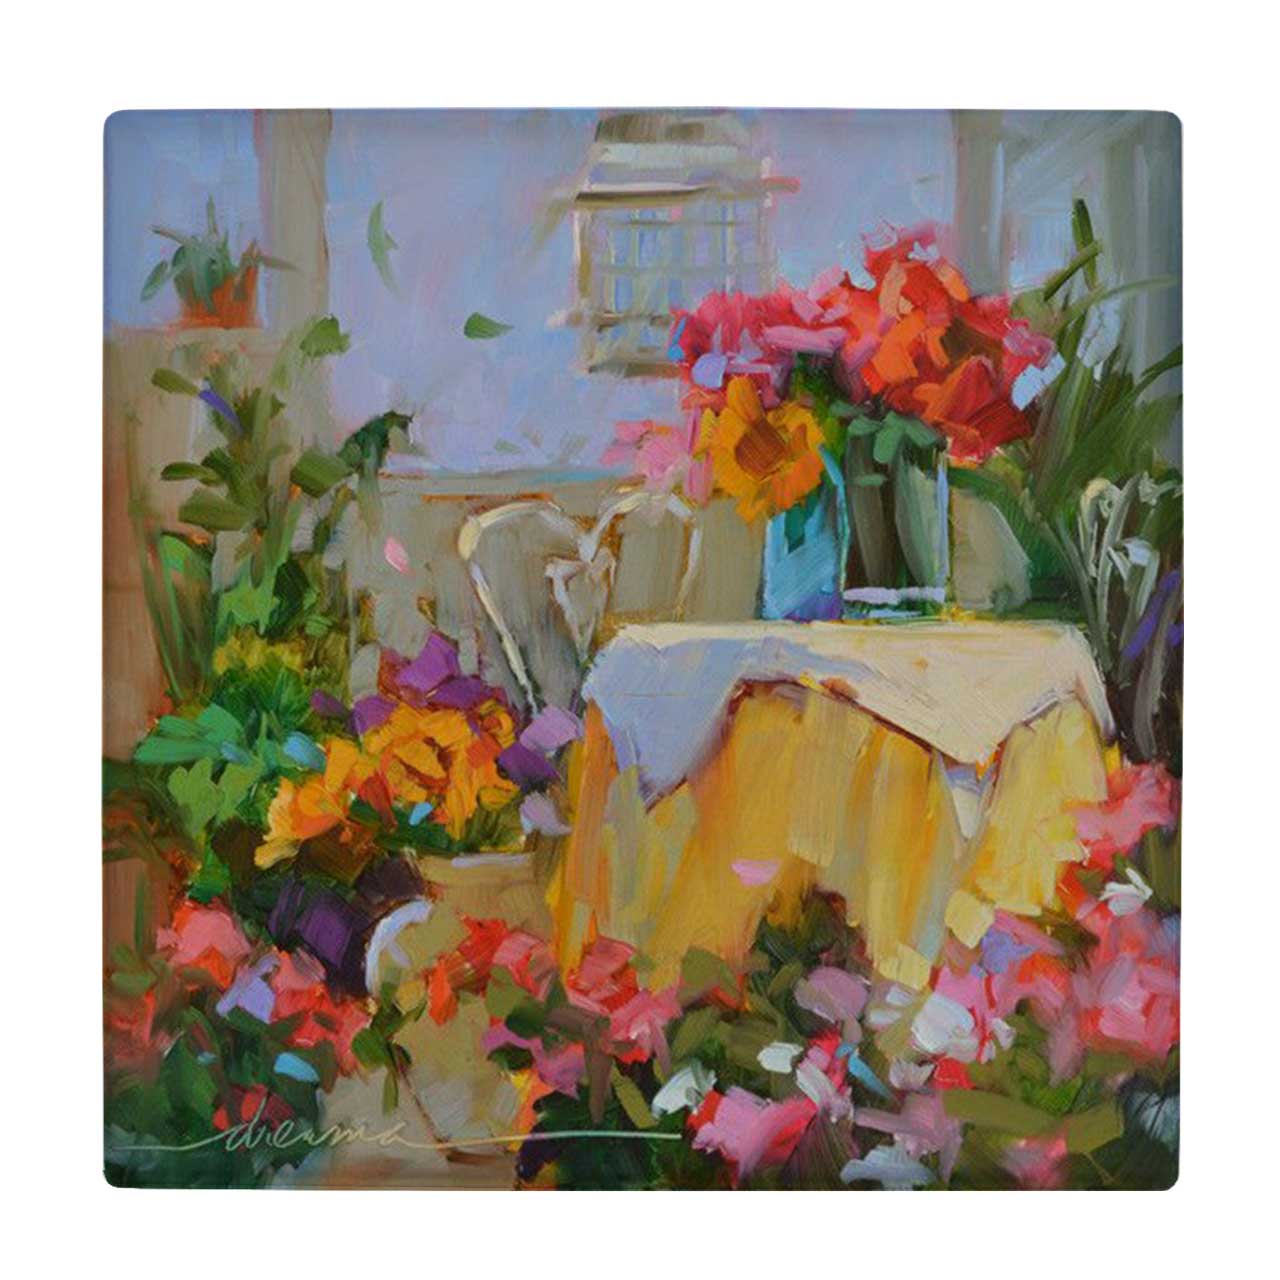  کاشی کارنیلا طرح نقاشی گلدان گل روی میز کد wkk760